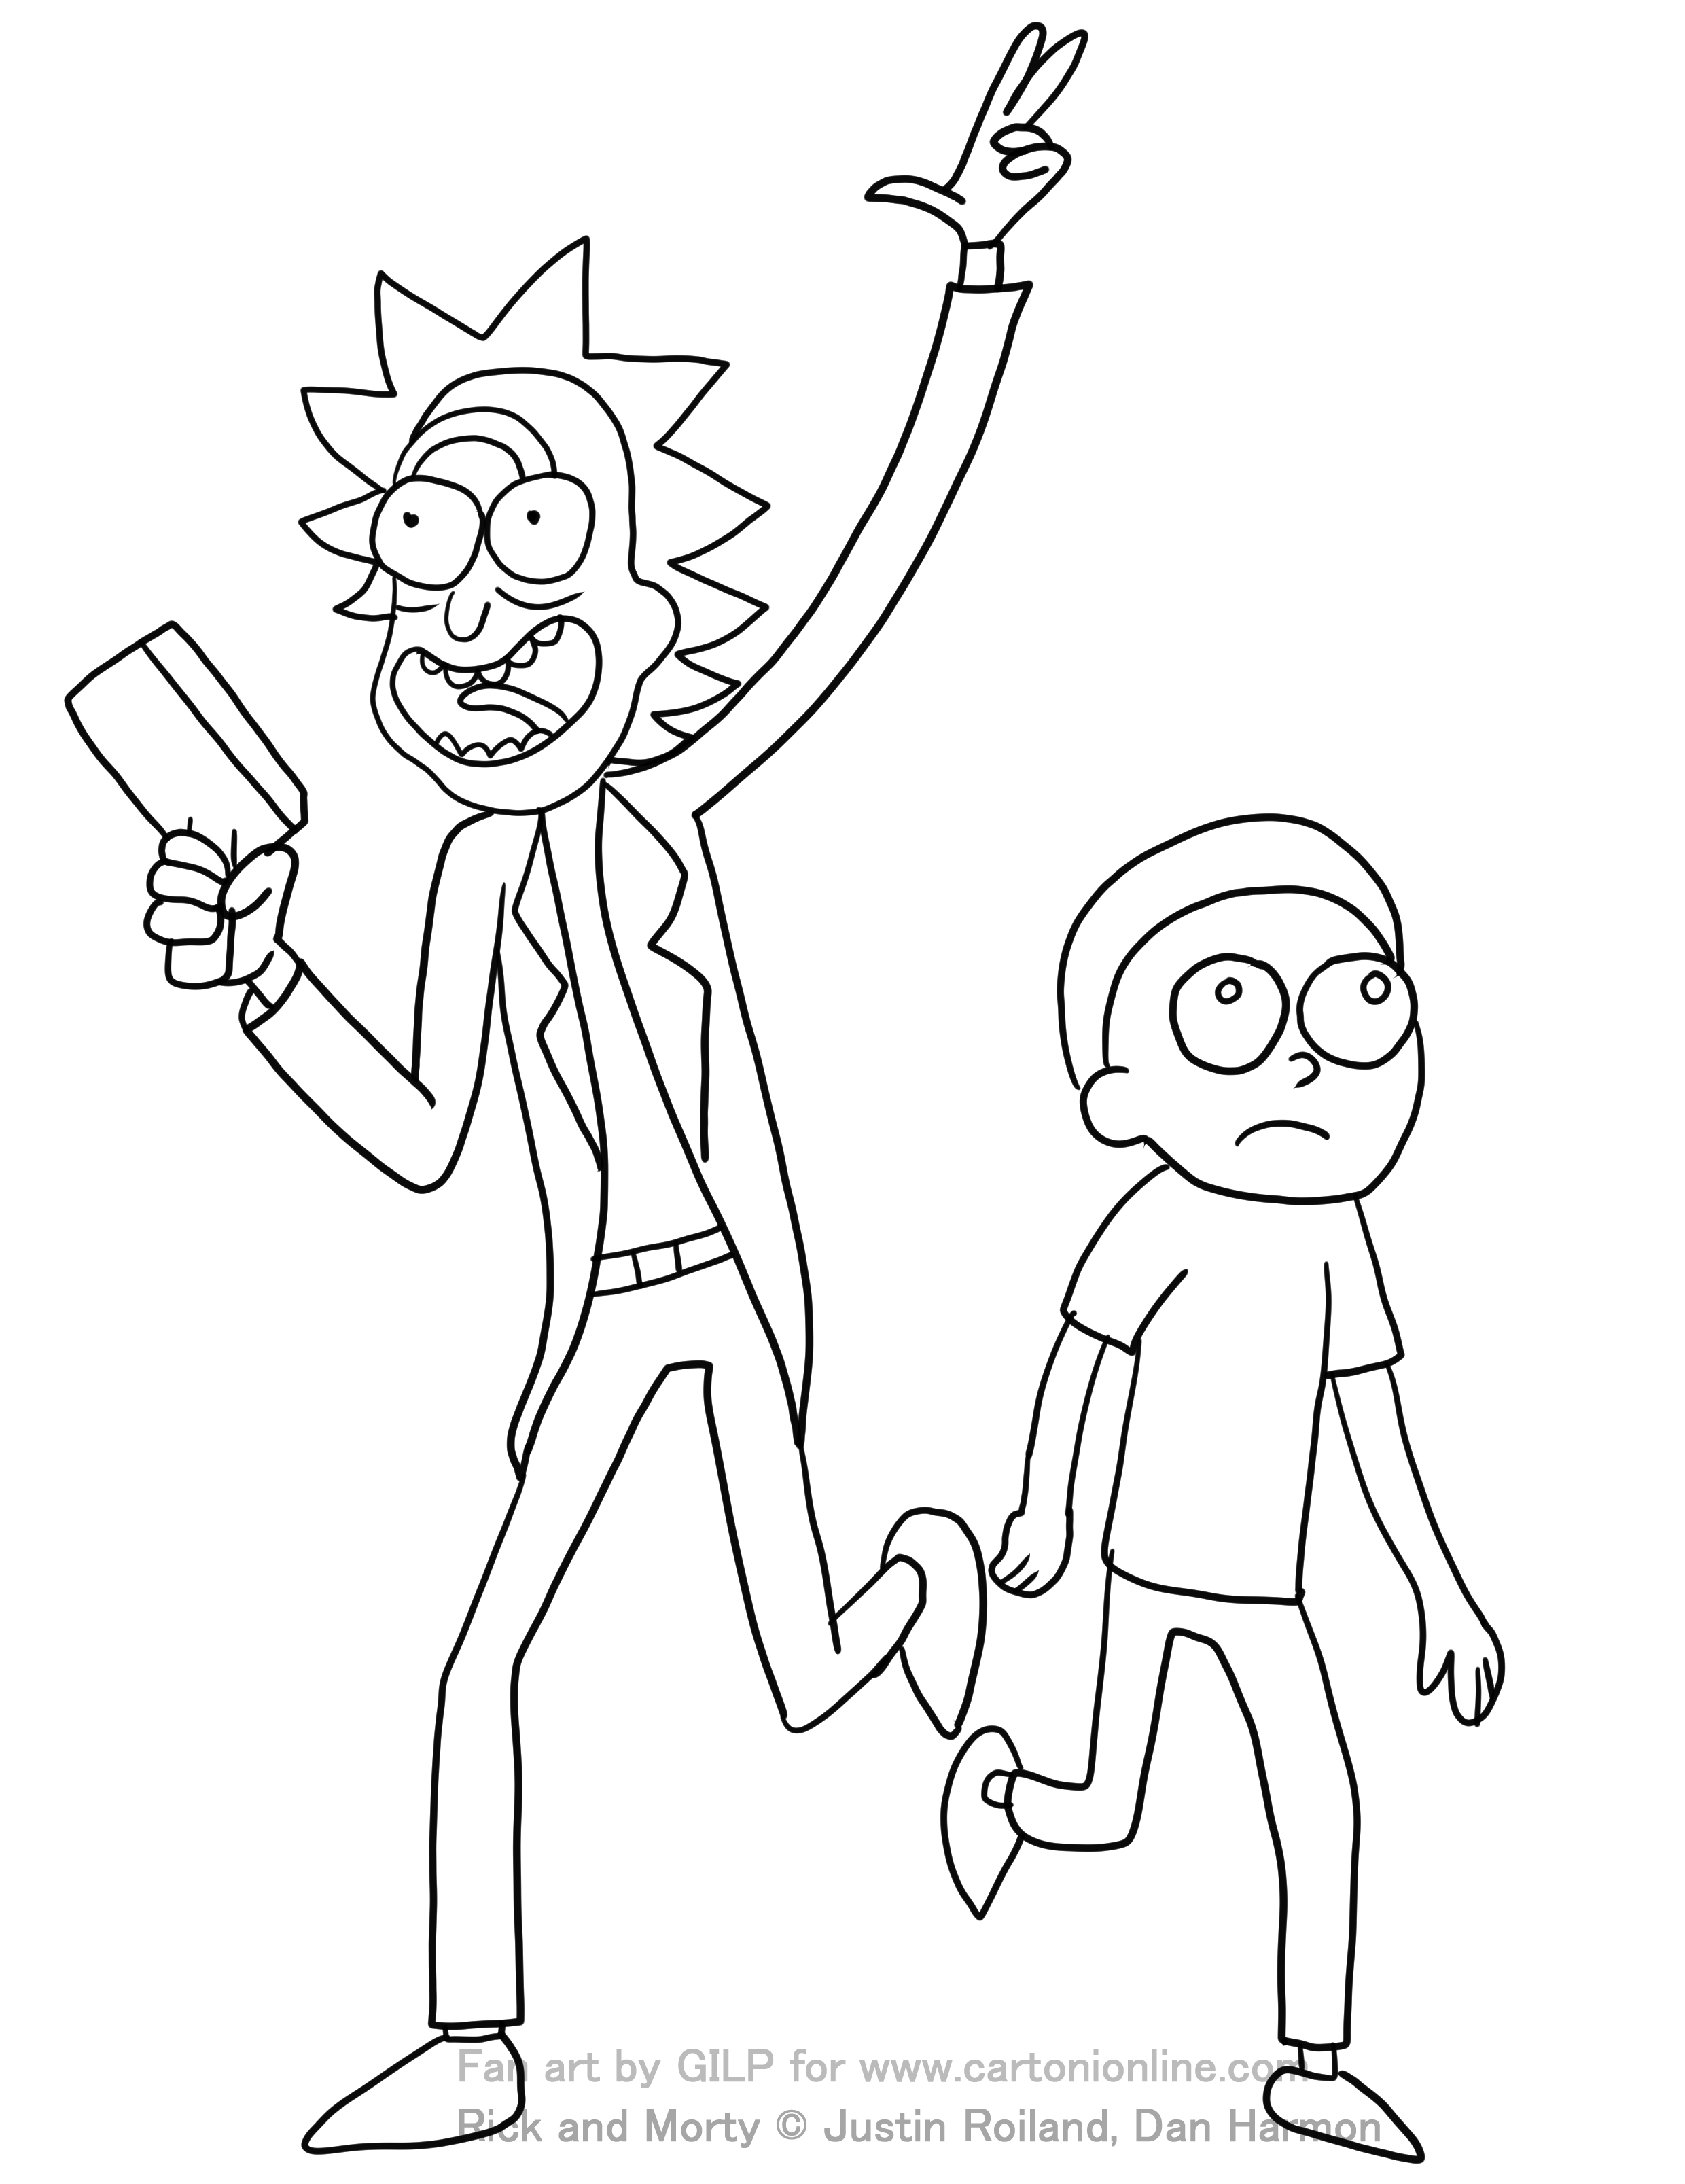 Dibujo de Rick y Morty 02 de Rick y Morty para colorear